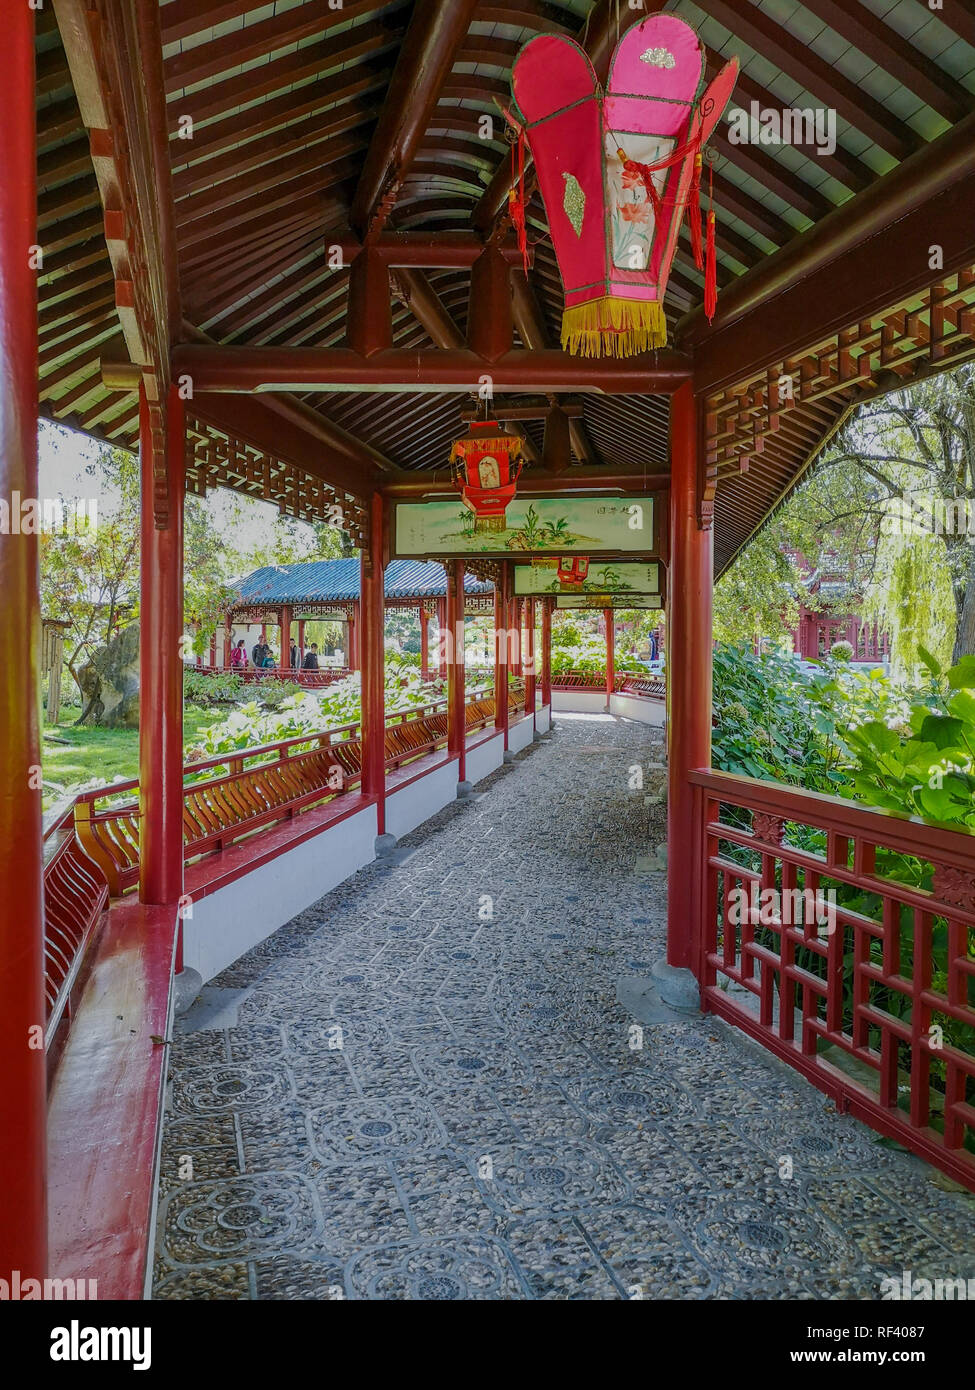 September 2018 - Hennegau, Belgien: Traditionelle chinesische Holz- Korridor in leuchtendem Rot mit Laternen in der Chinesische Garten im Zoo Pairi Daiza Stockfoto